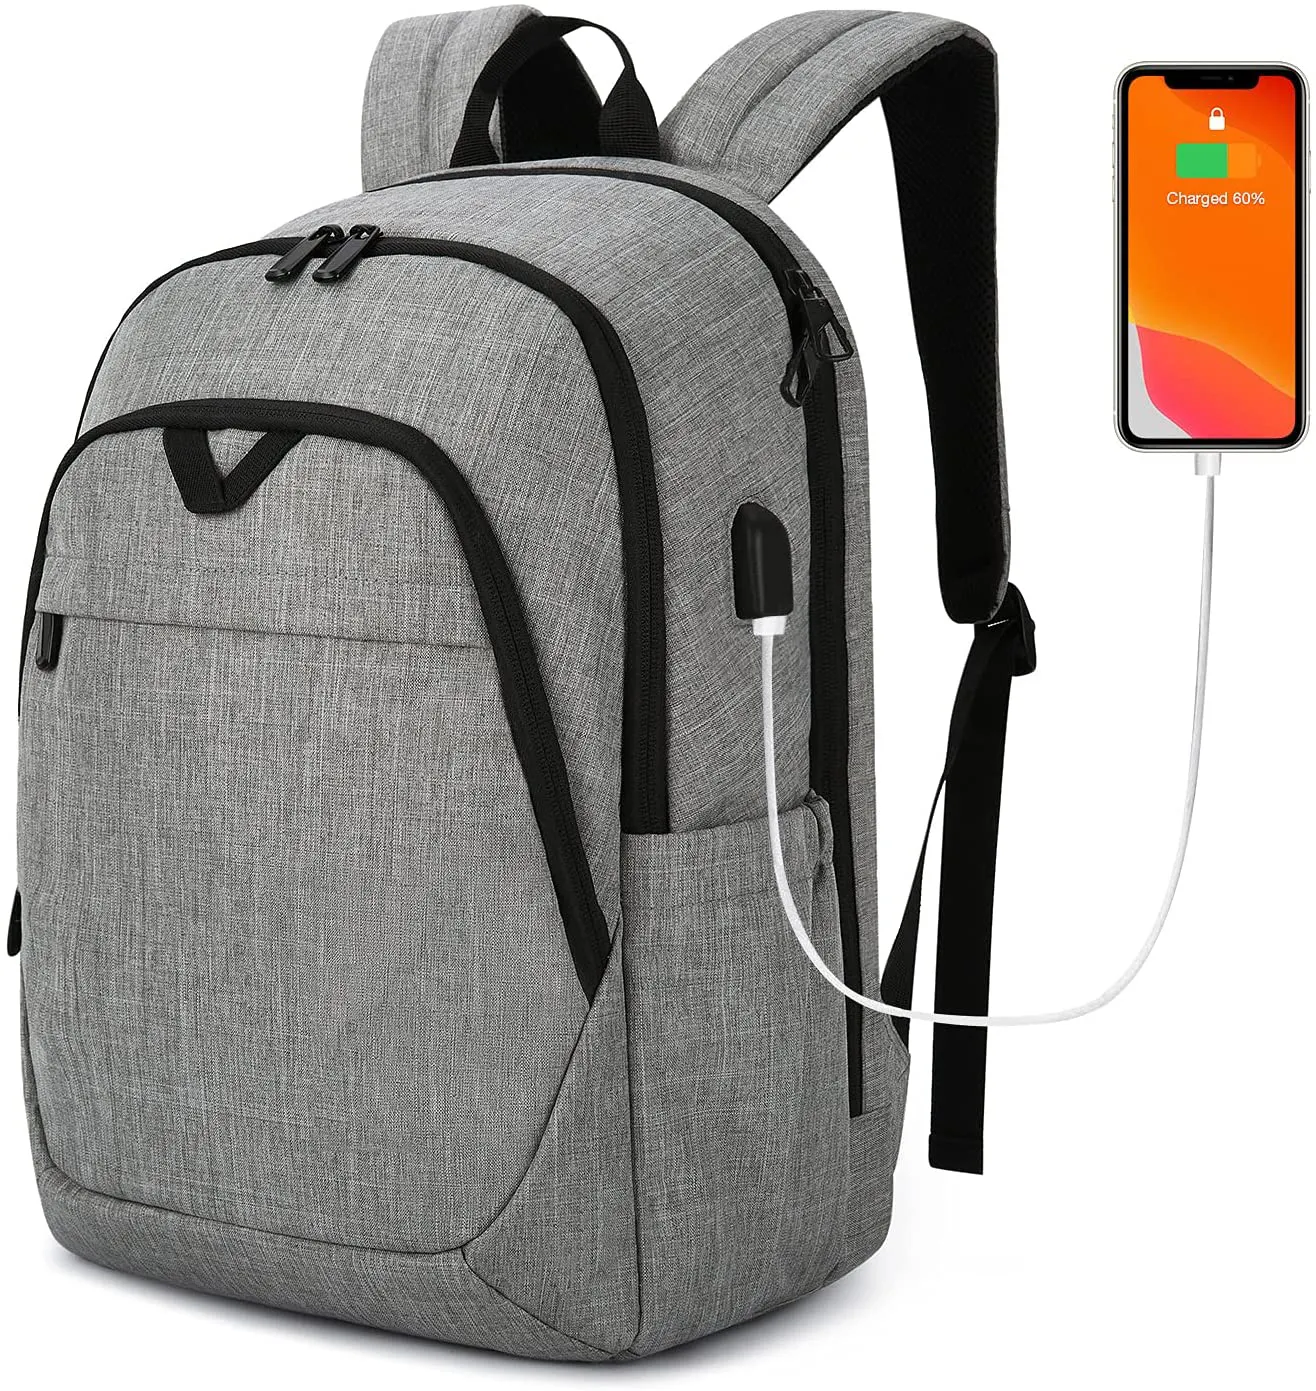 Backpacks For Men College Backpack 15.6 Laptop Travel Back Pack With Usb Charging Port Computer Bag